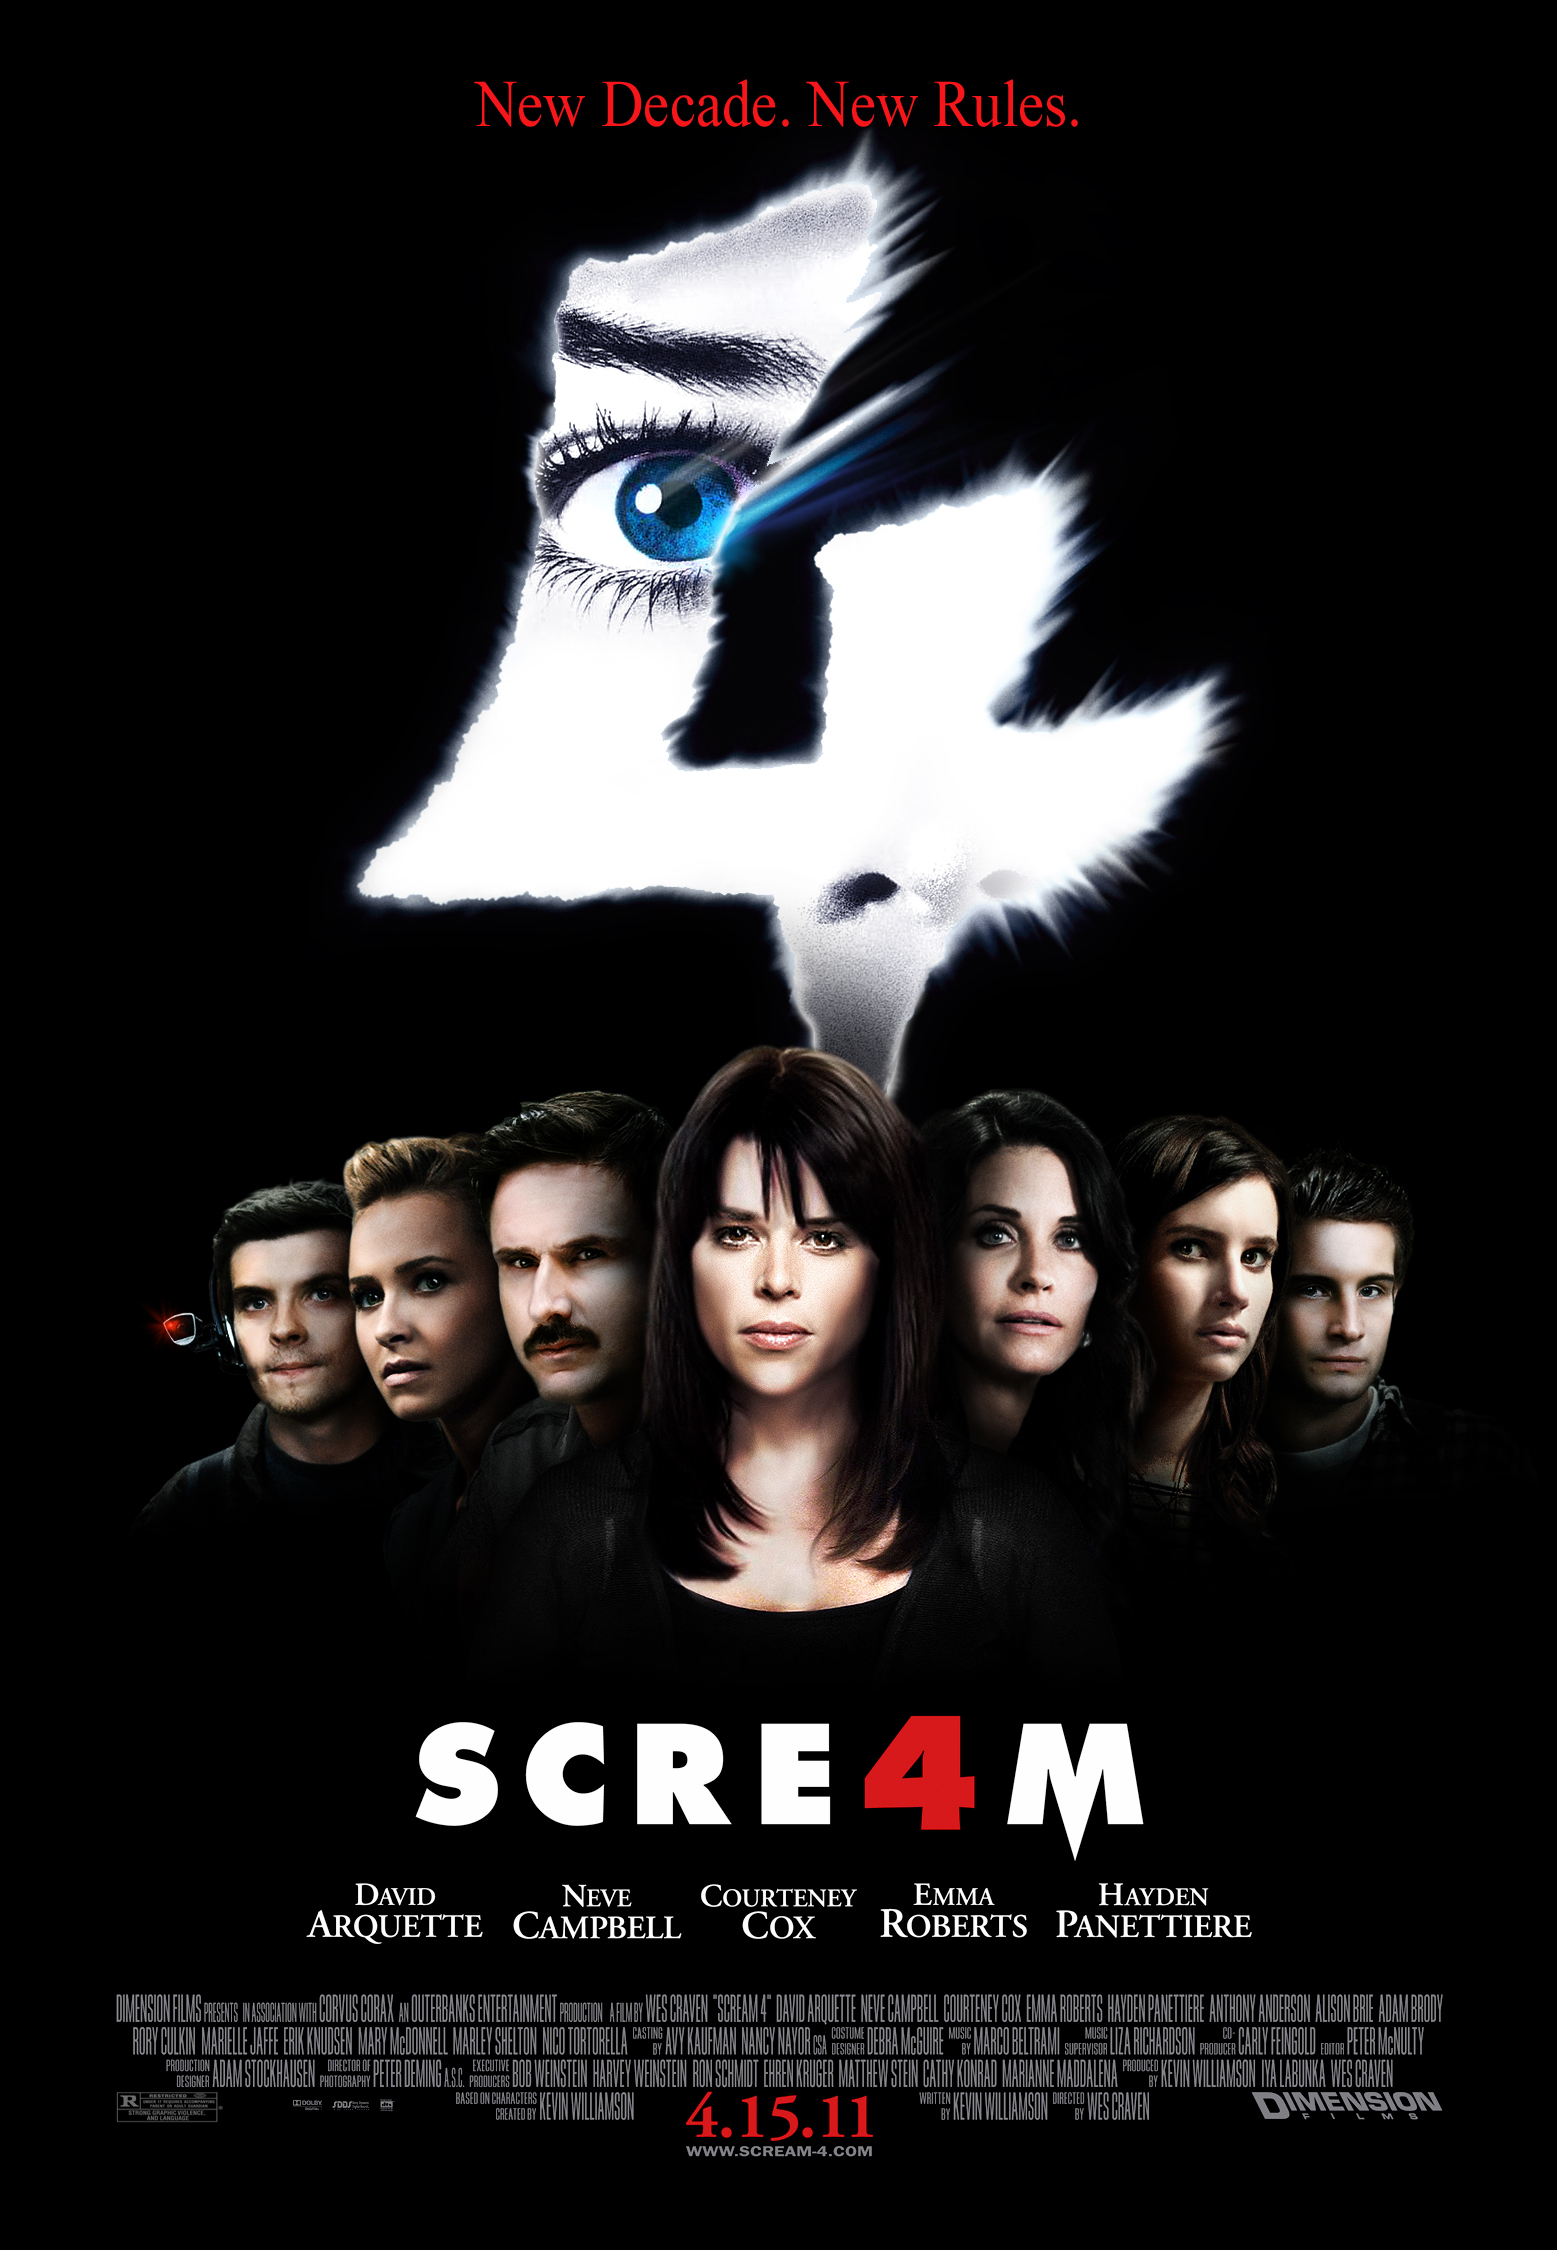 The Scream (album) - Wikipedia